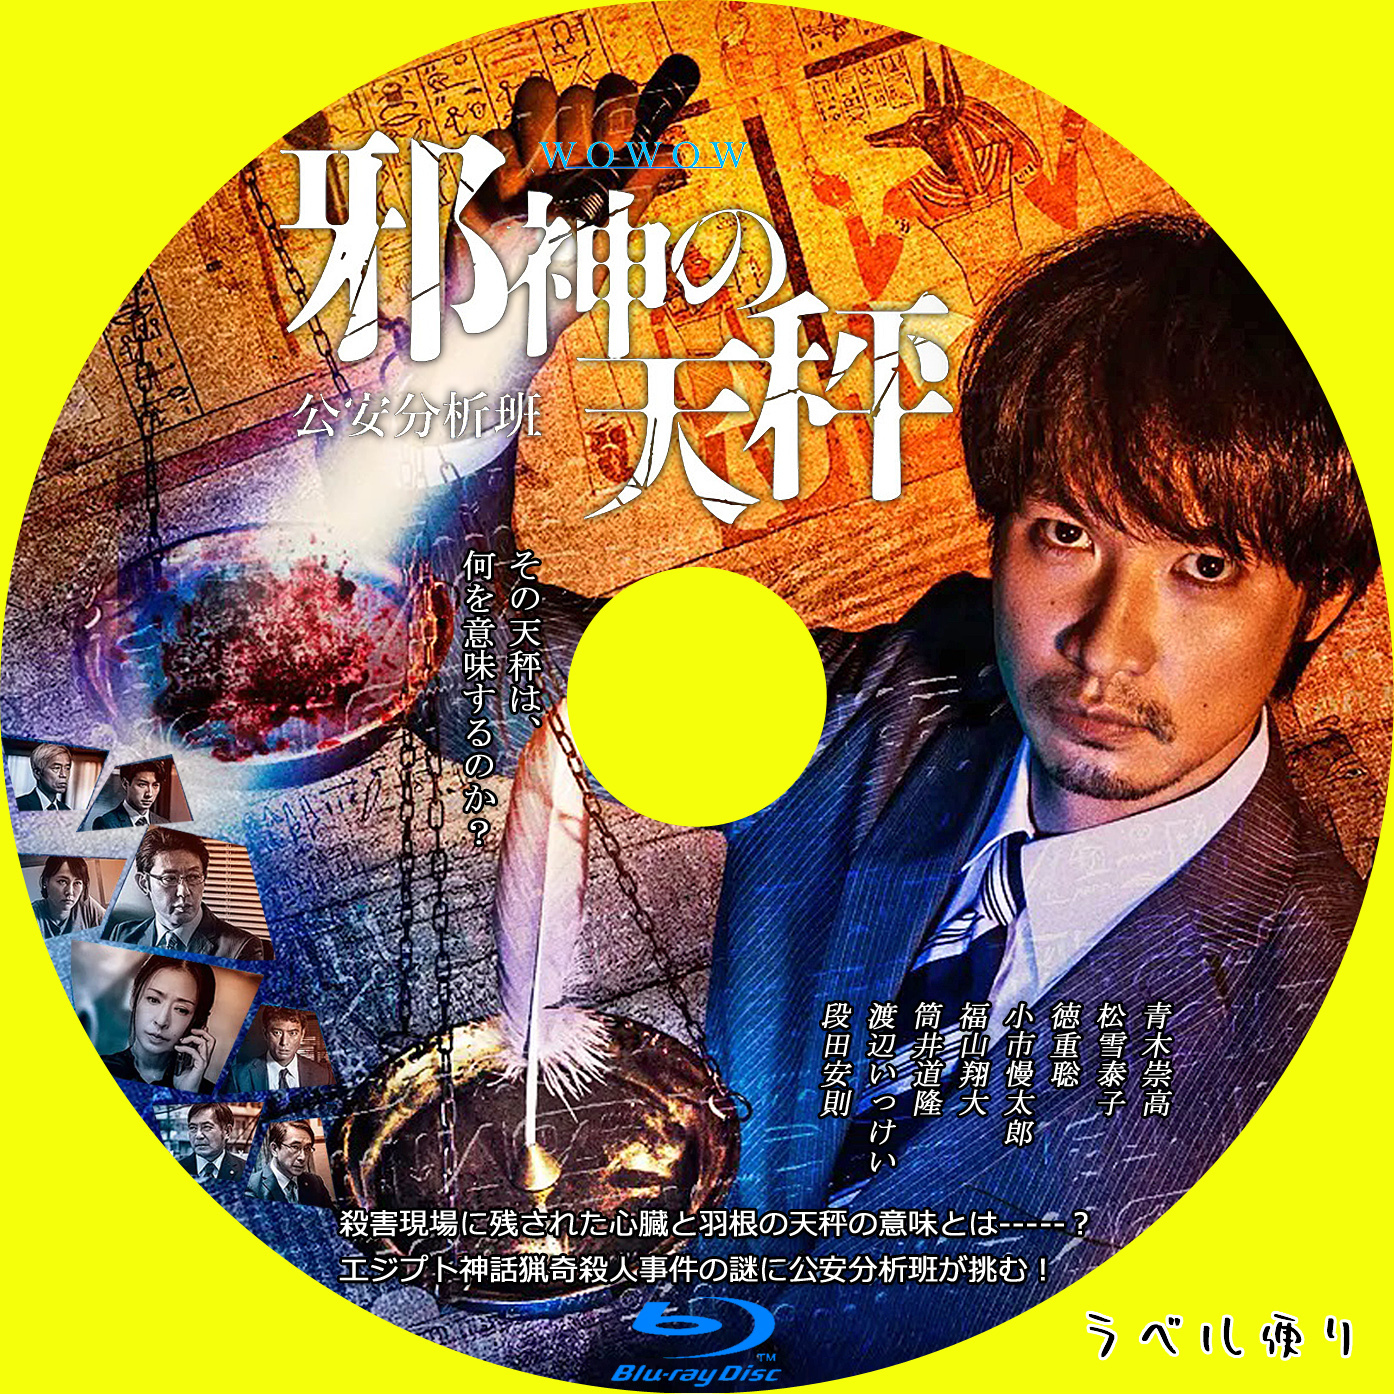 衝撃特価 【DVD】連続ドラマW 邪神の天秤 公安分析班 DVD-BOX - DVD